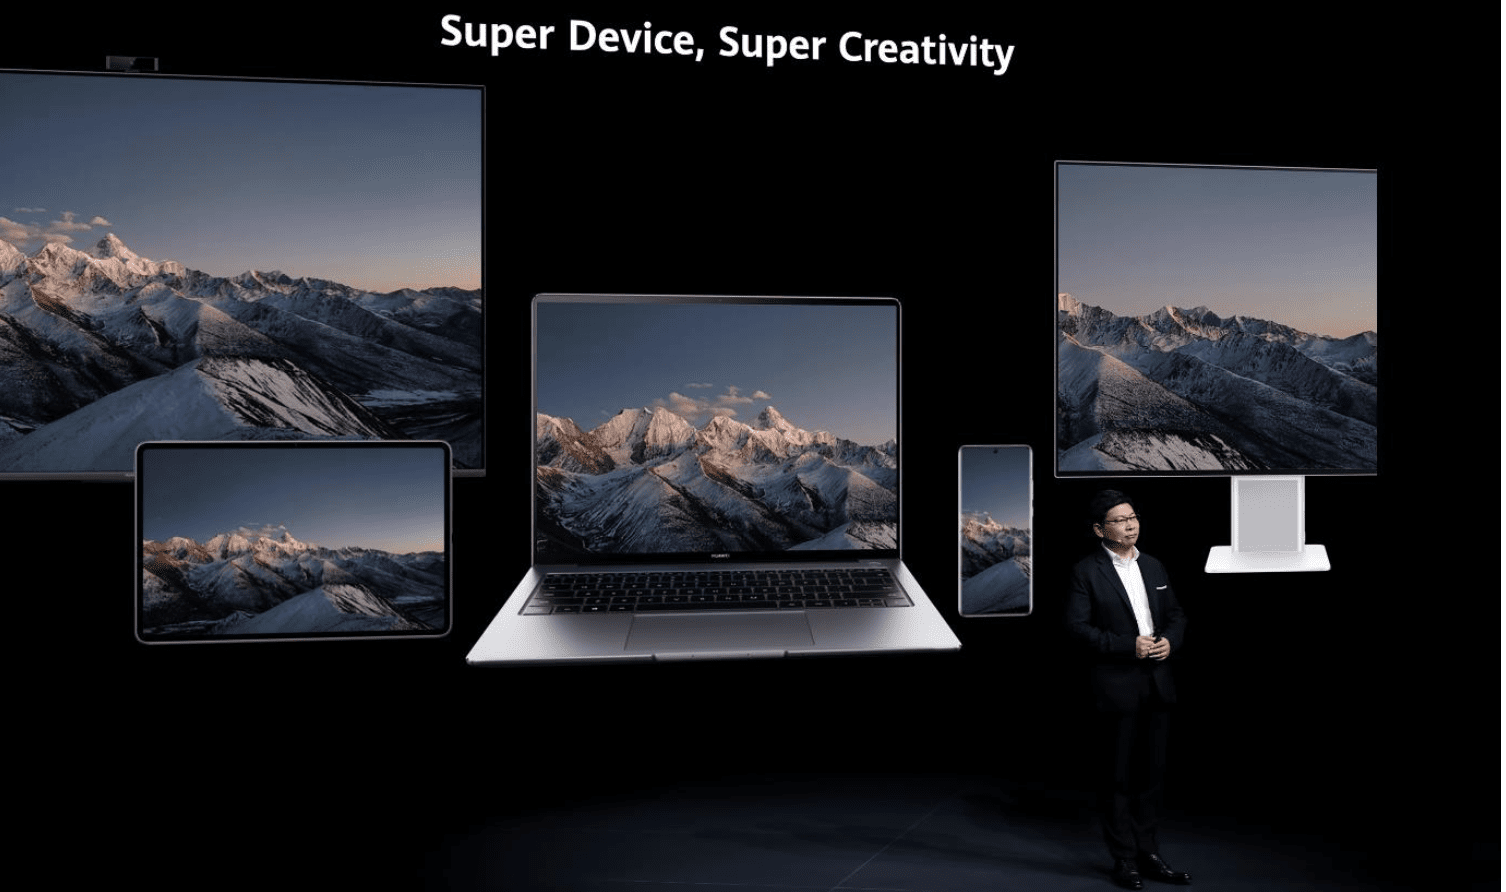 Huawei presenta il sistema Super Device